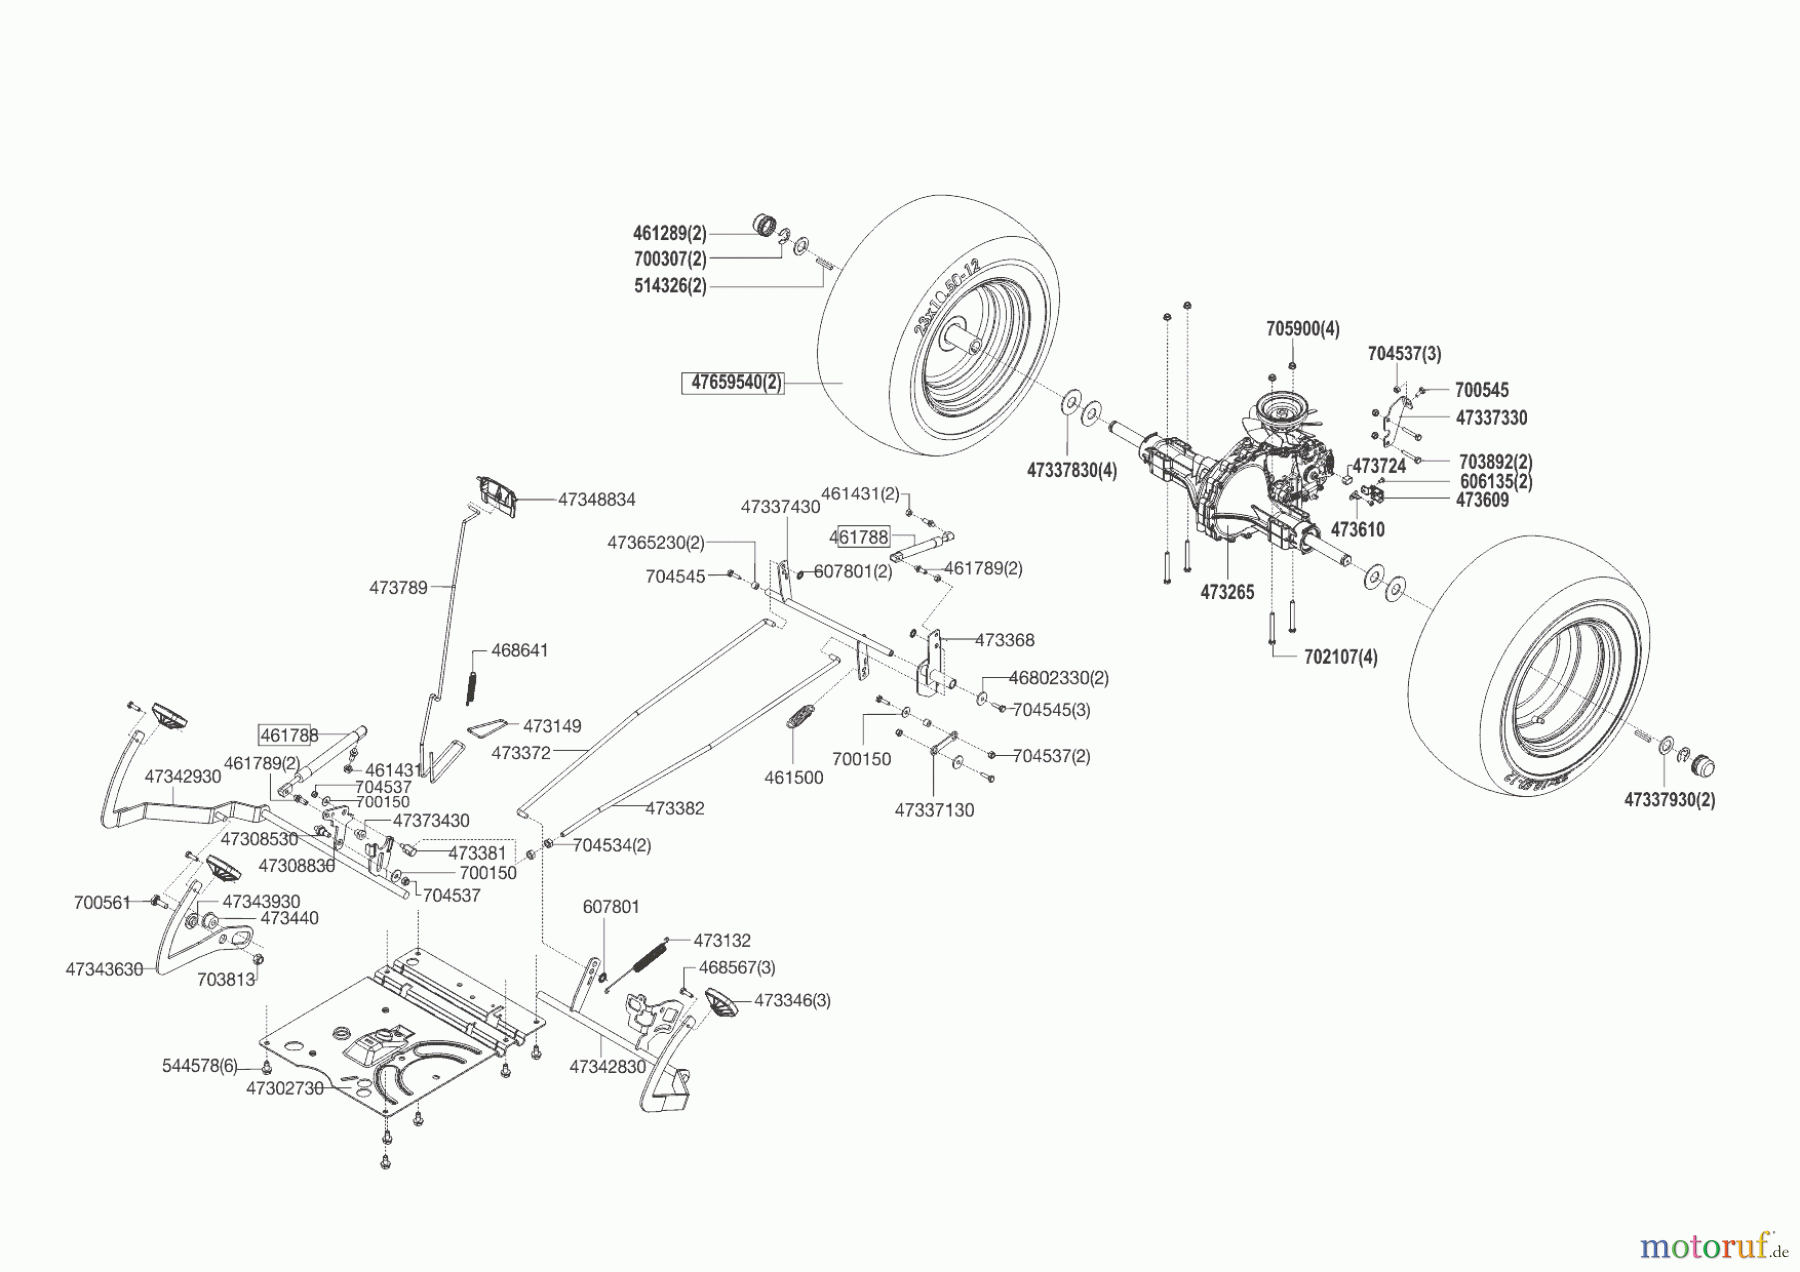  Powerline Gartentechnik Rasentraktor T20-105.4 HDE V2  09/2014 - 09/2016 Seite 4